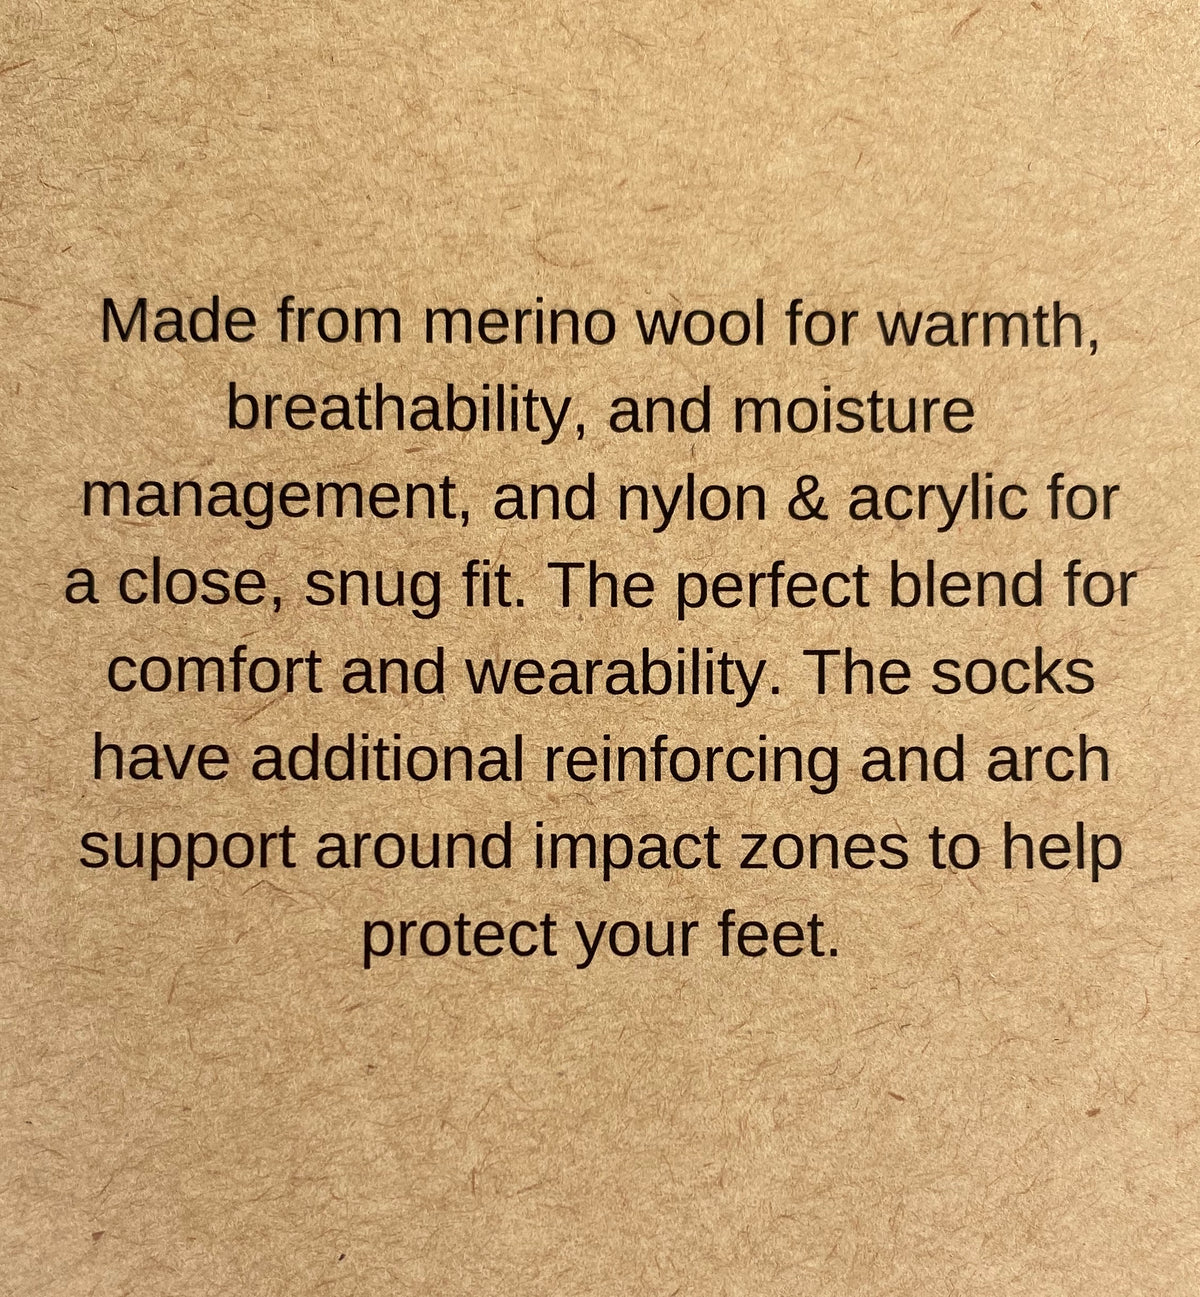 Unisex Merino Gumboot Socks - 2 Pack